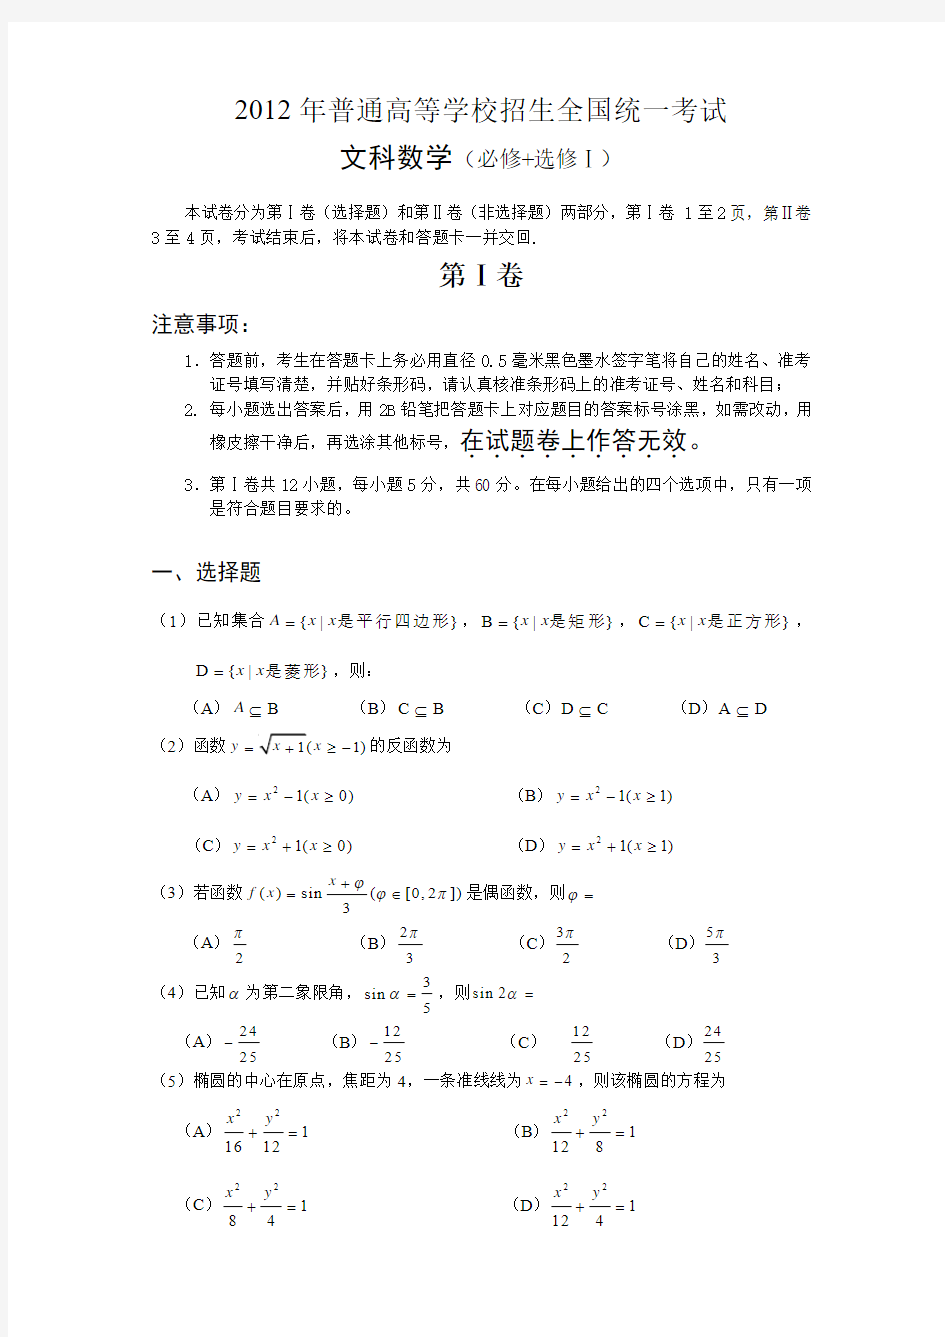 2012高考文科数学试题(大纲版)